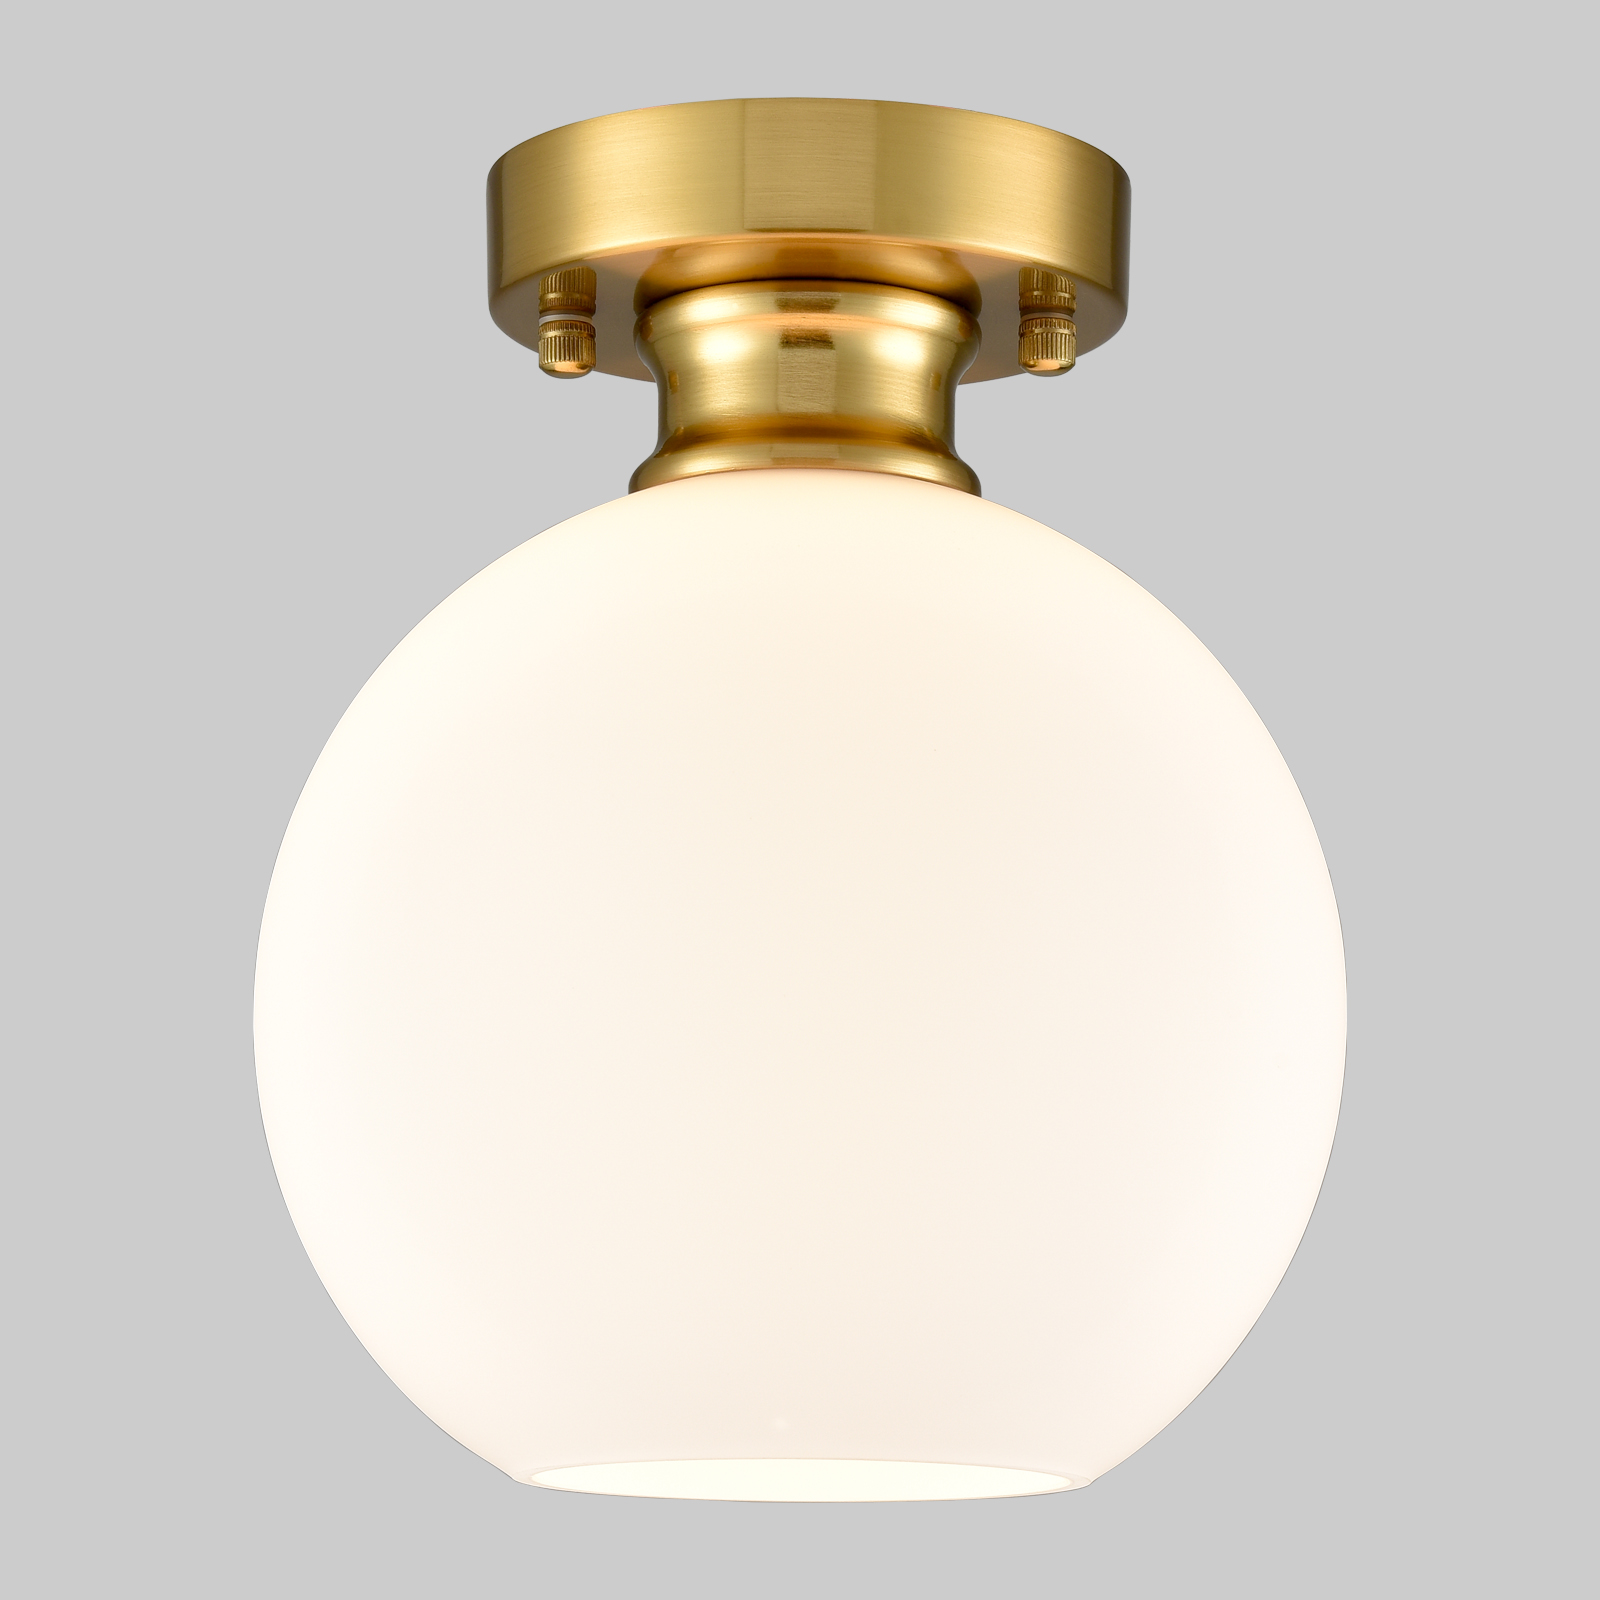 Gold Ceiling Light Fixture Flush Mount Light with Milk Opal Glass Shade